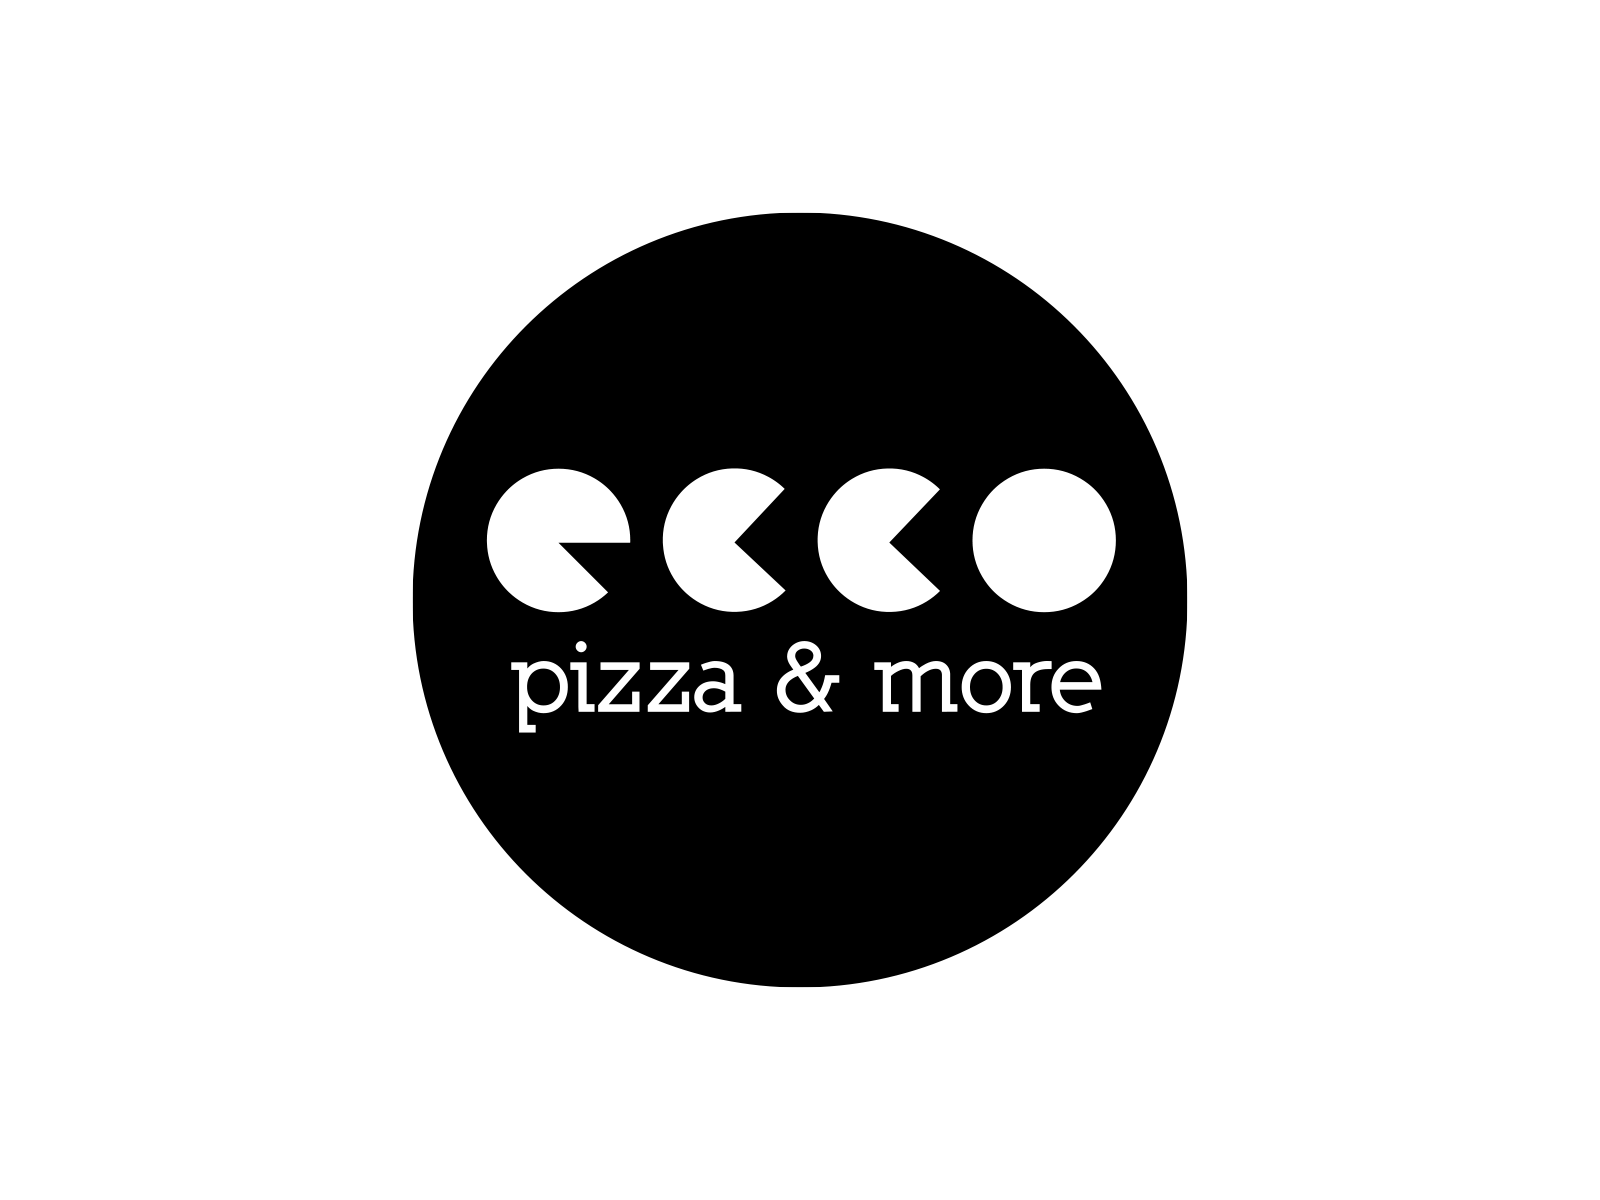 ecco pizza & more